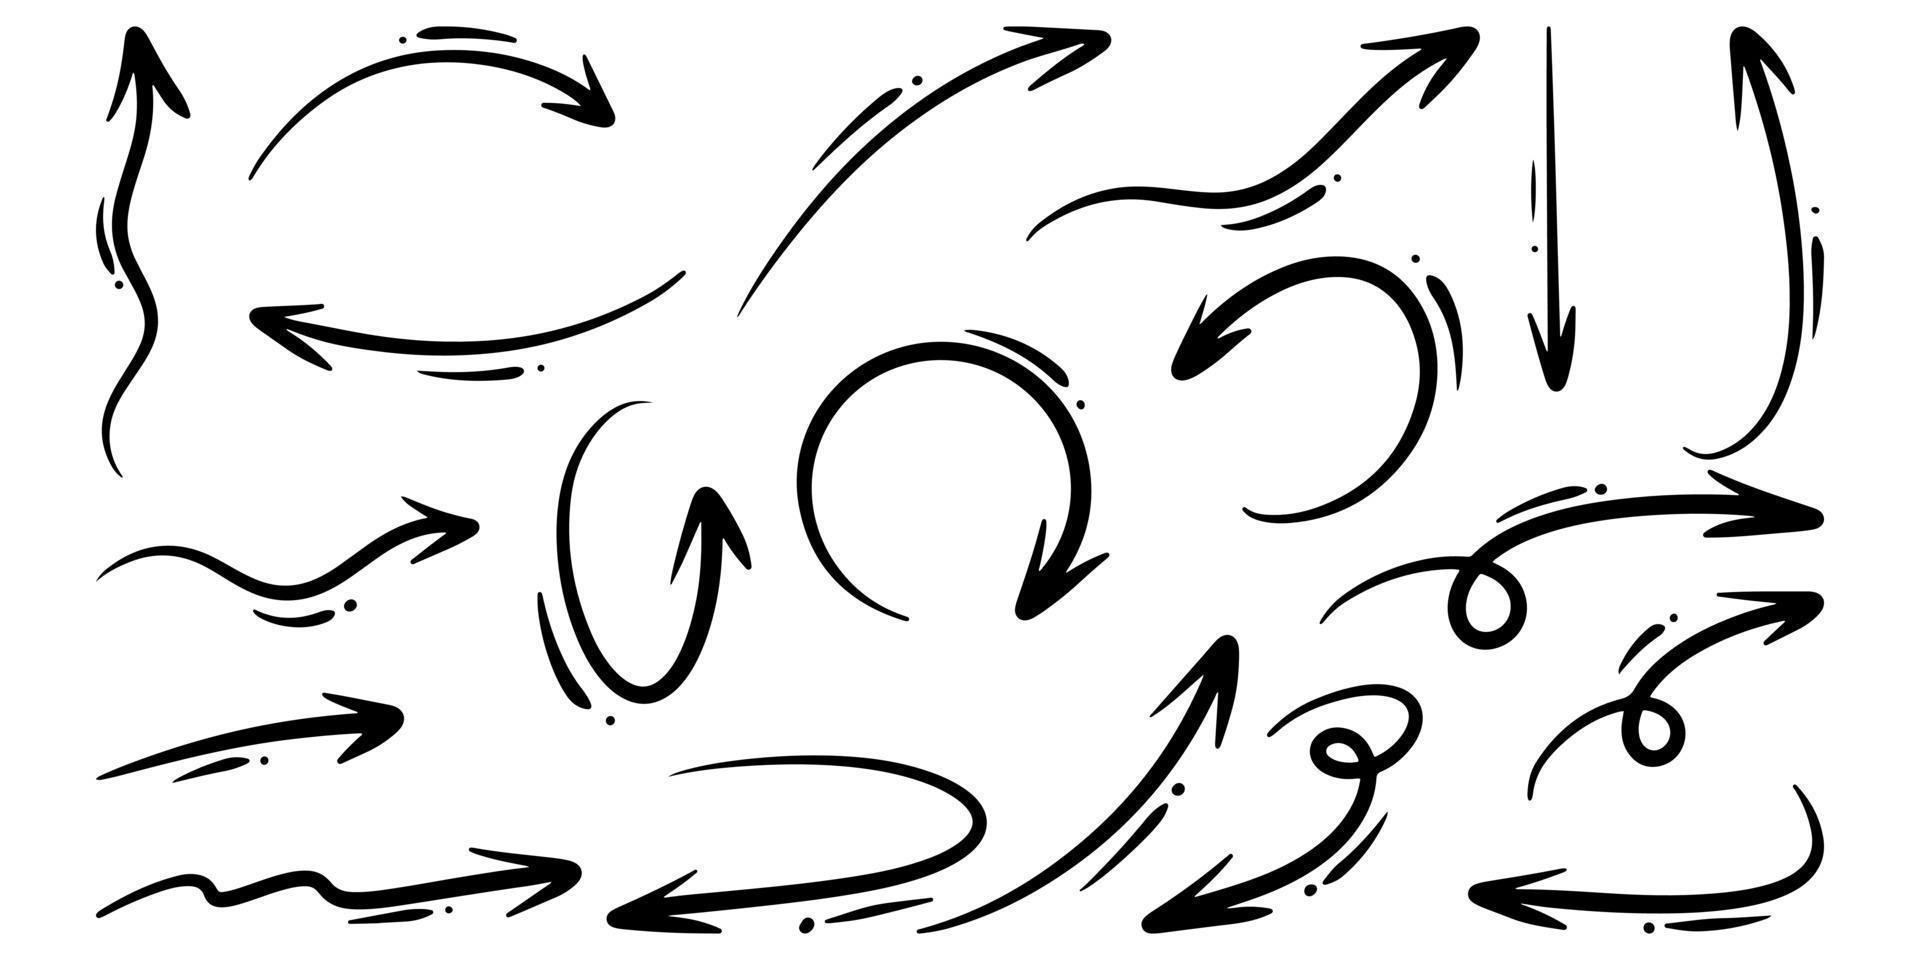 ensemble de flèches vectorielles dessinées à la main doodle sur fond blanc. illustration vectorielle d'élément de conception. vecteur